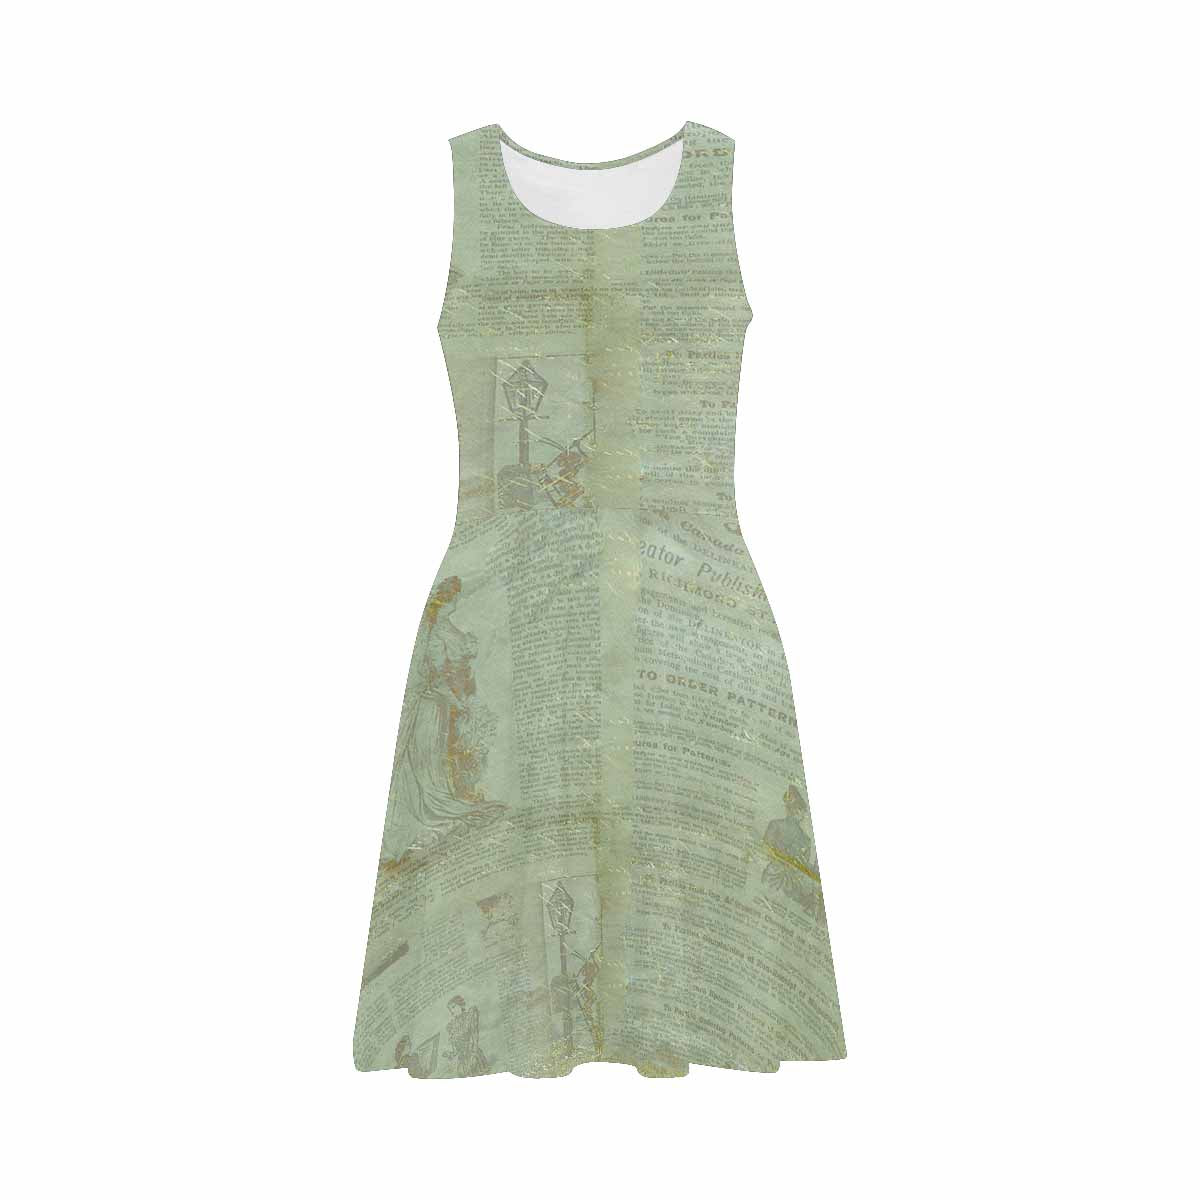 Antique General summer dress, MODEL 09534, design 38